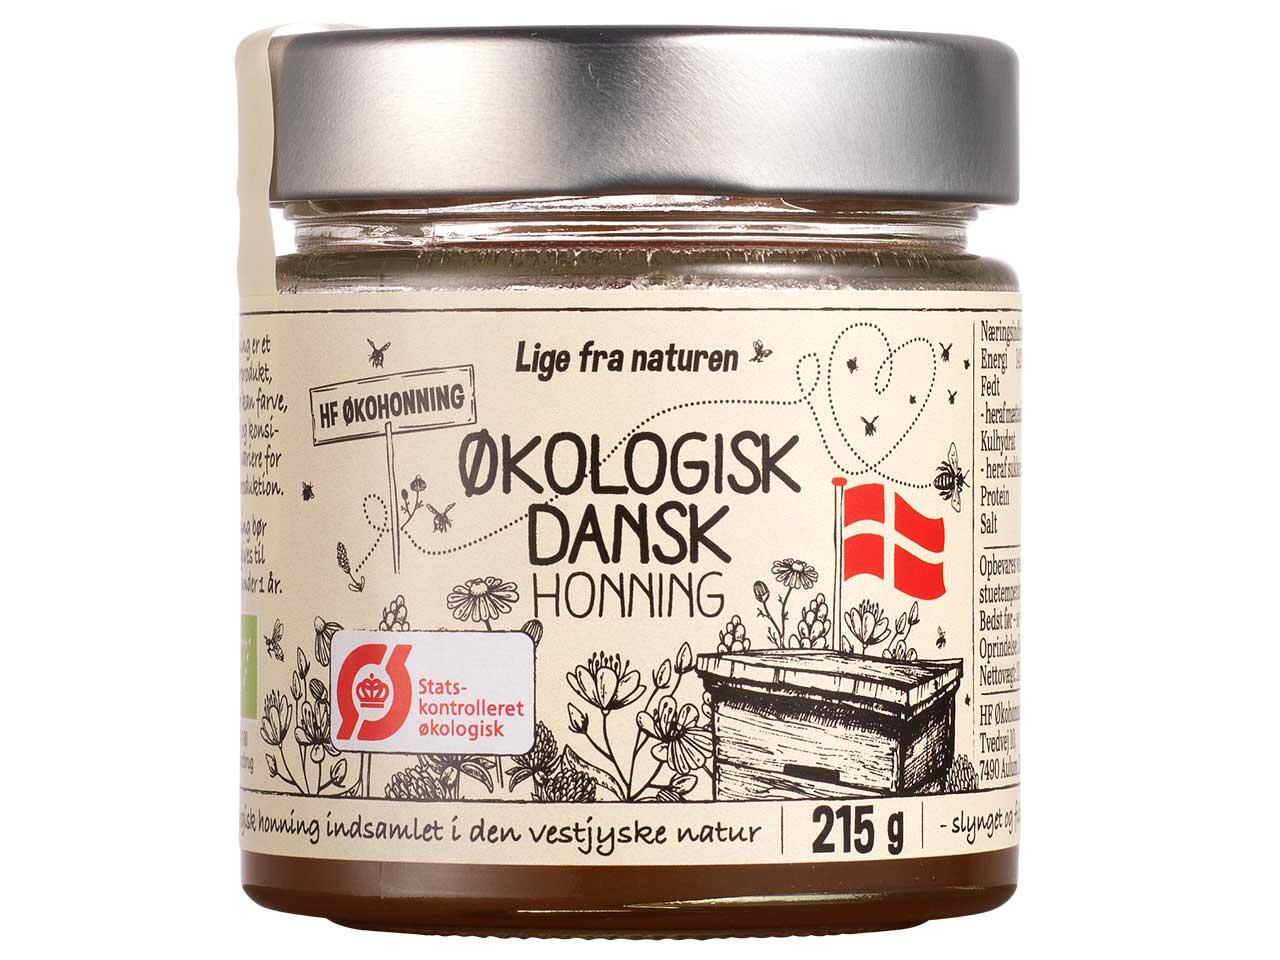 Økologsk dansk honning HF Økohonning